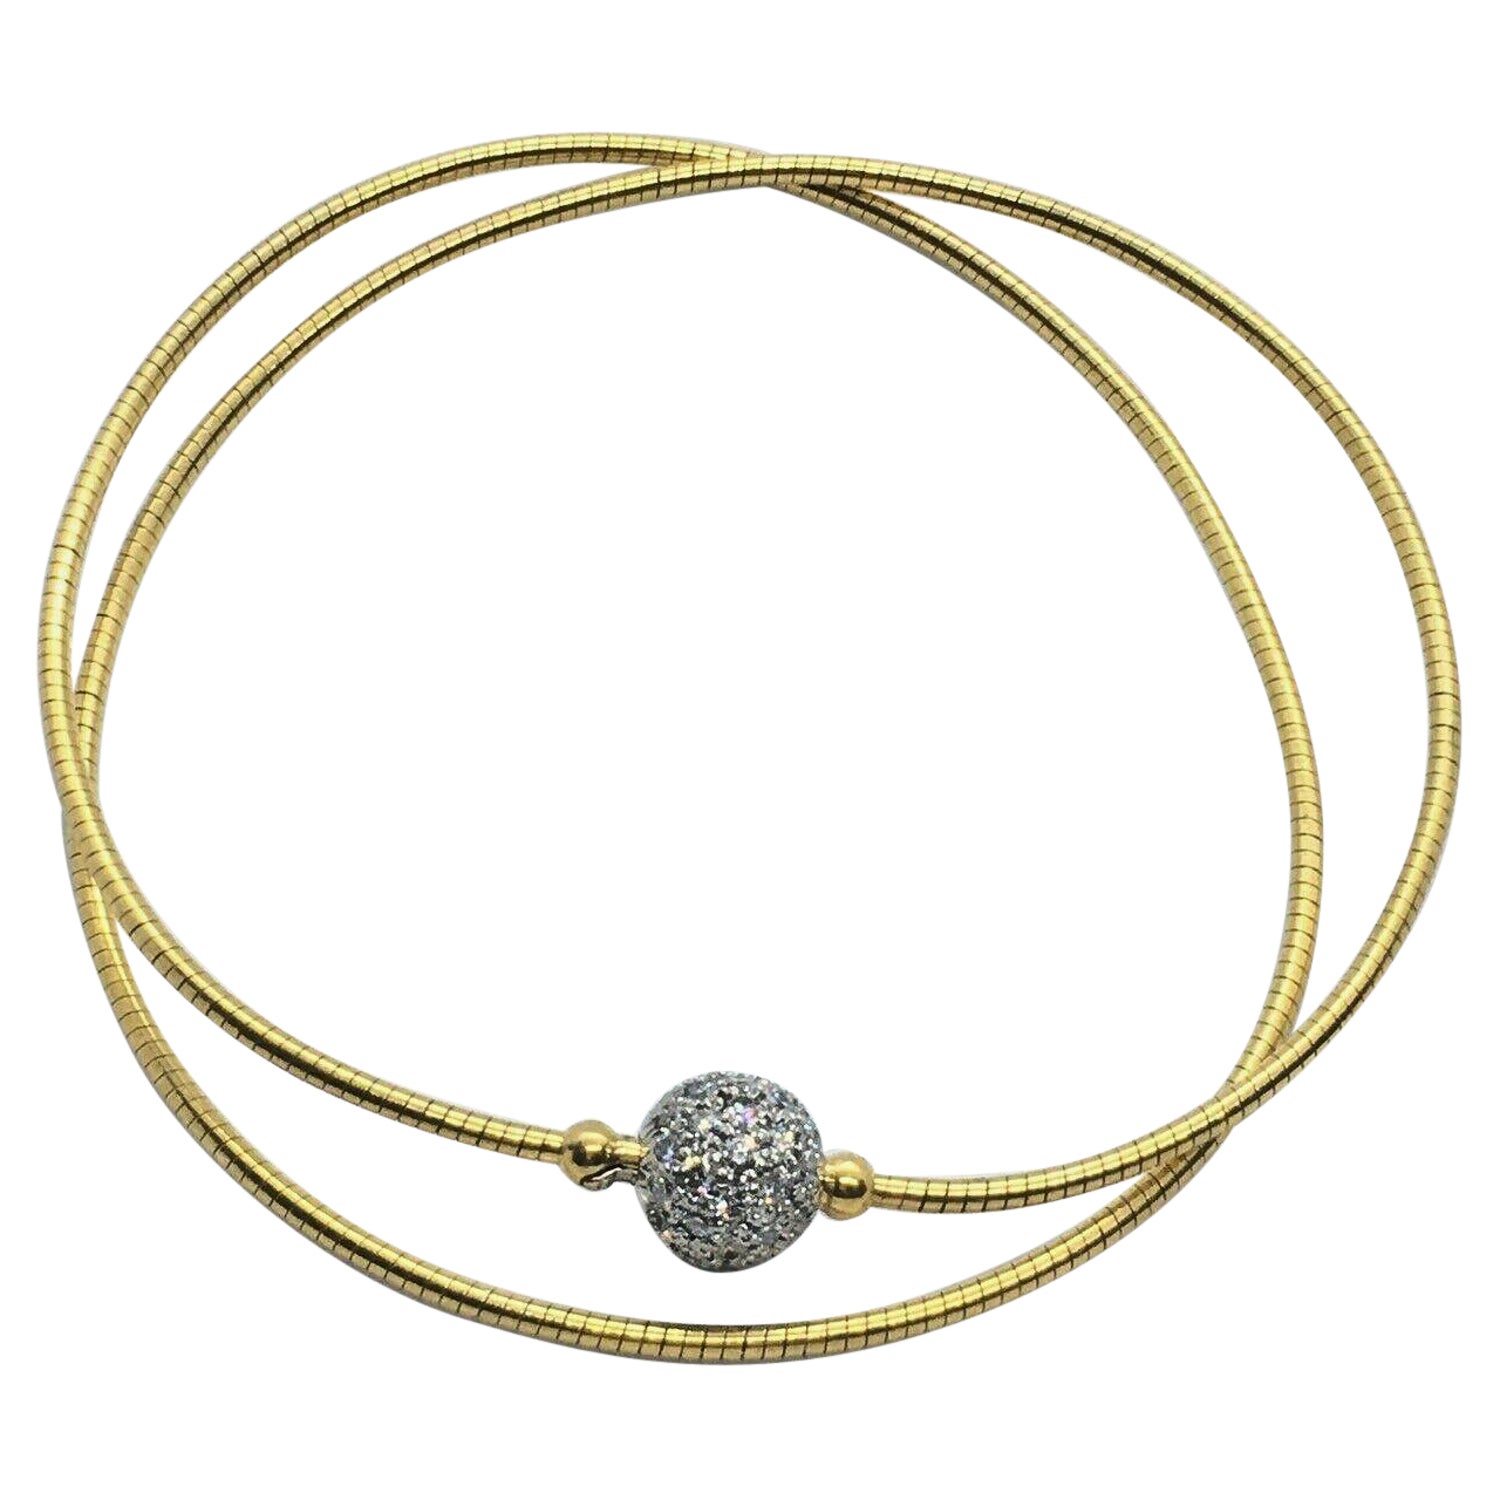 Hardwear 18K Rose Gold Diamond Pendant Necklace